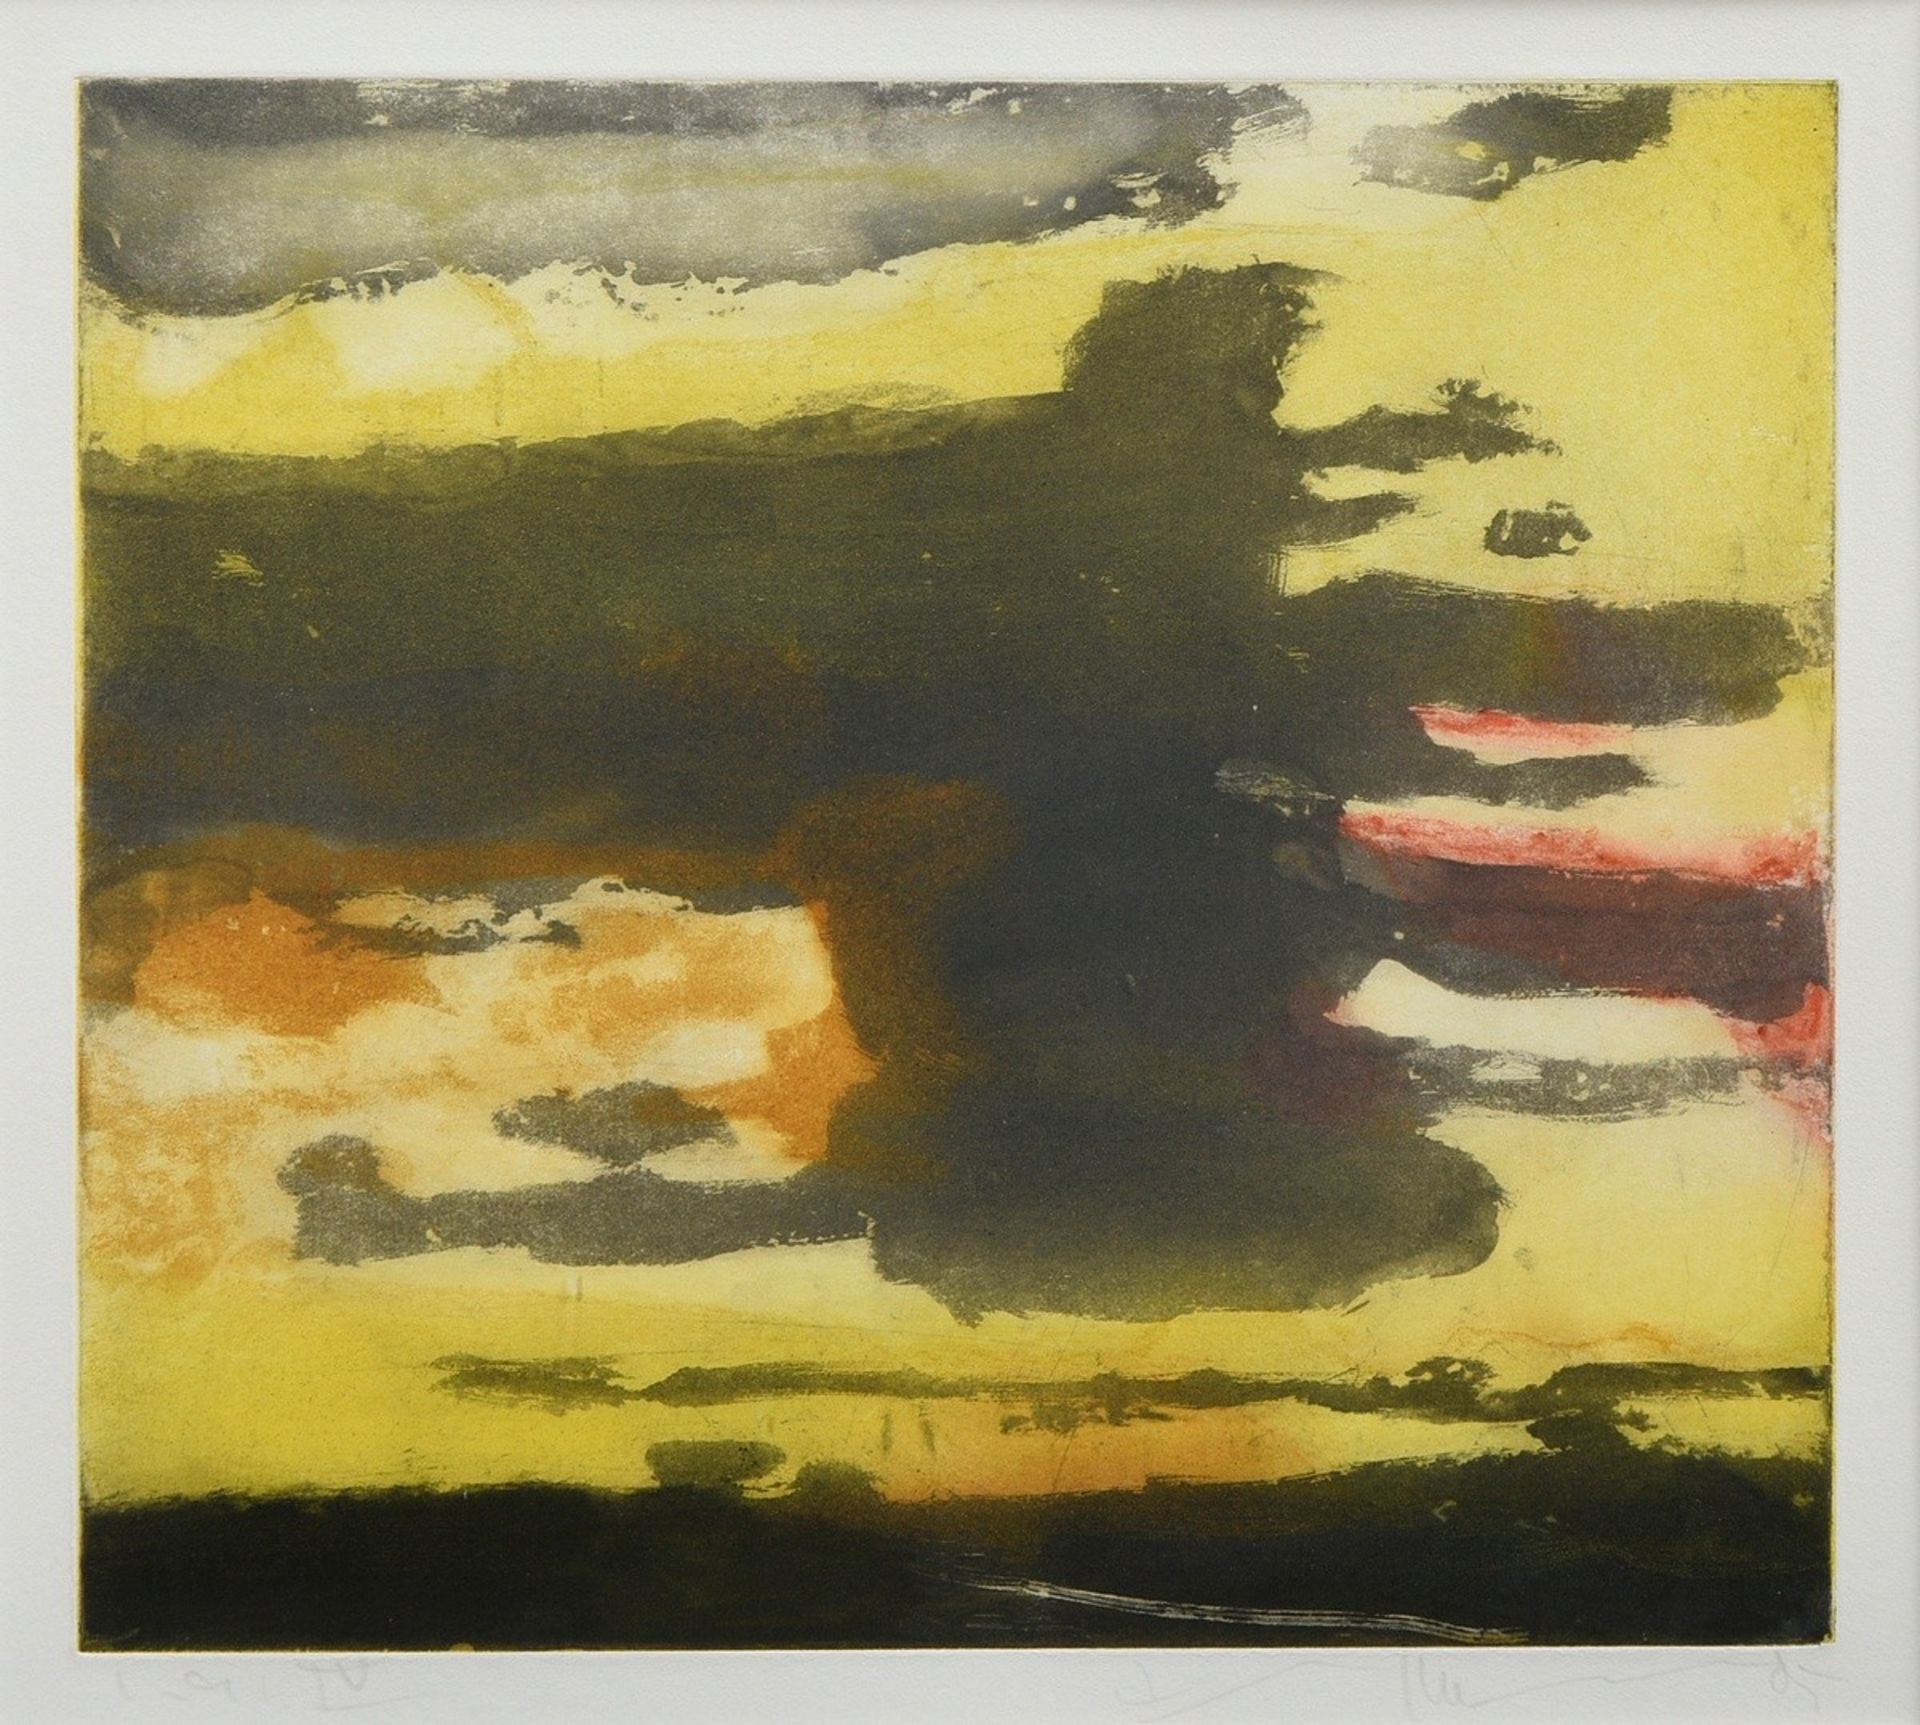 Fussmann, Klaus (*1938) "Sunset" 1985, colour etching, e.a./IV, b. sign./num./dat., PM 31,5x35,5cm